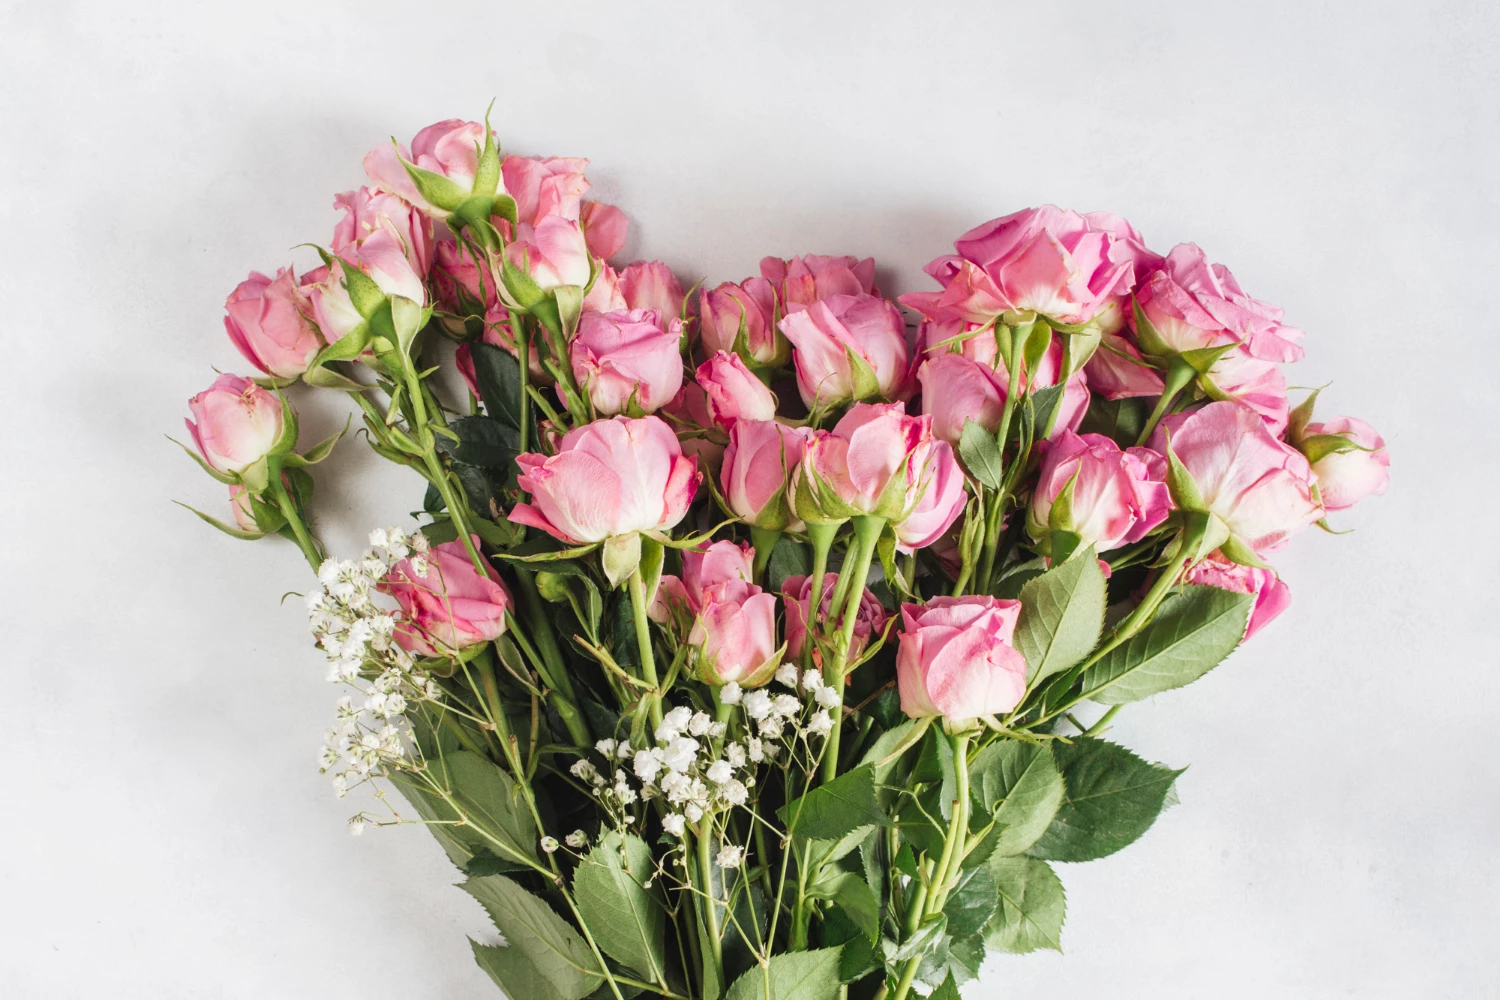 Мистецтво дарувати квіти, або як обрати правильний букет: поради від флористів Flowers Story